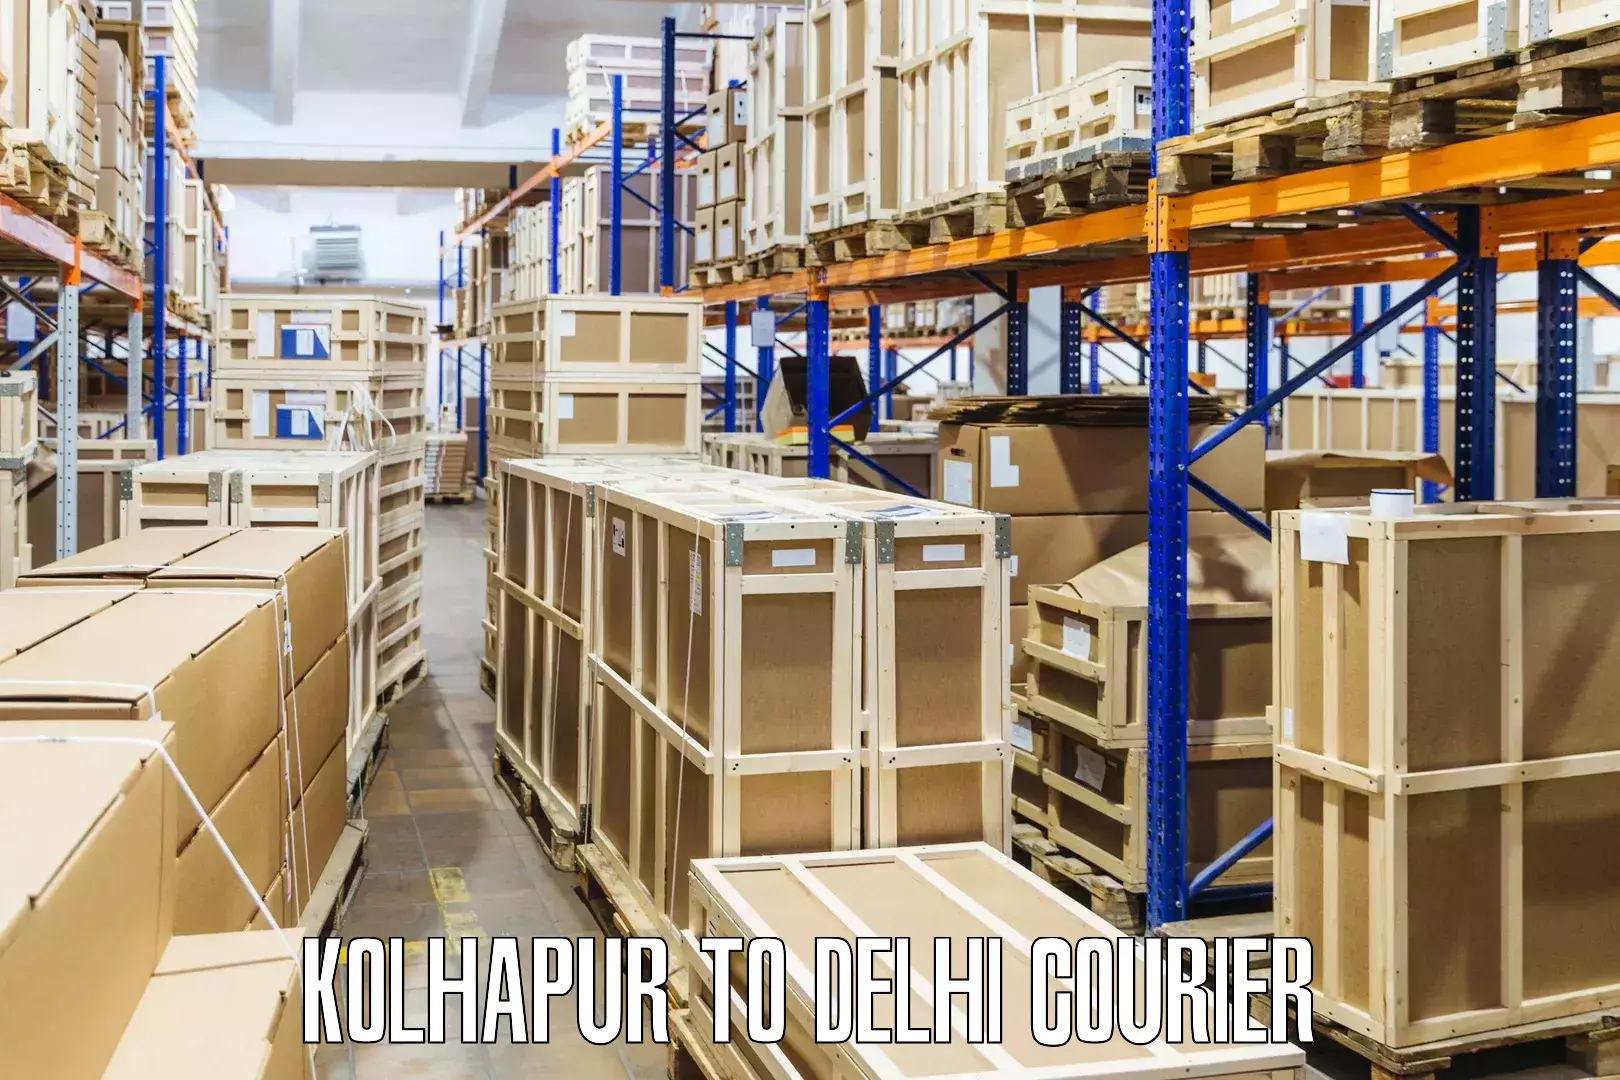 Personal parcel delivery Kolhapur to Jamia Millia Islamia New Delhi